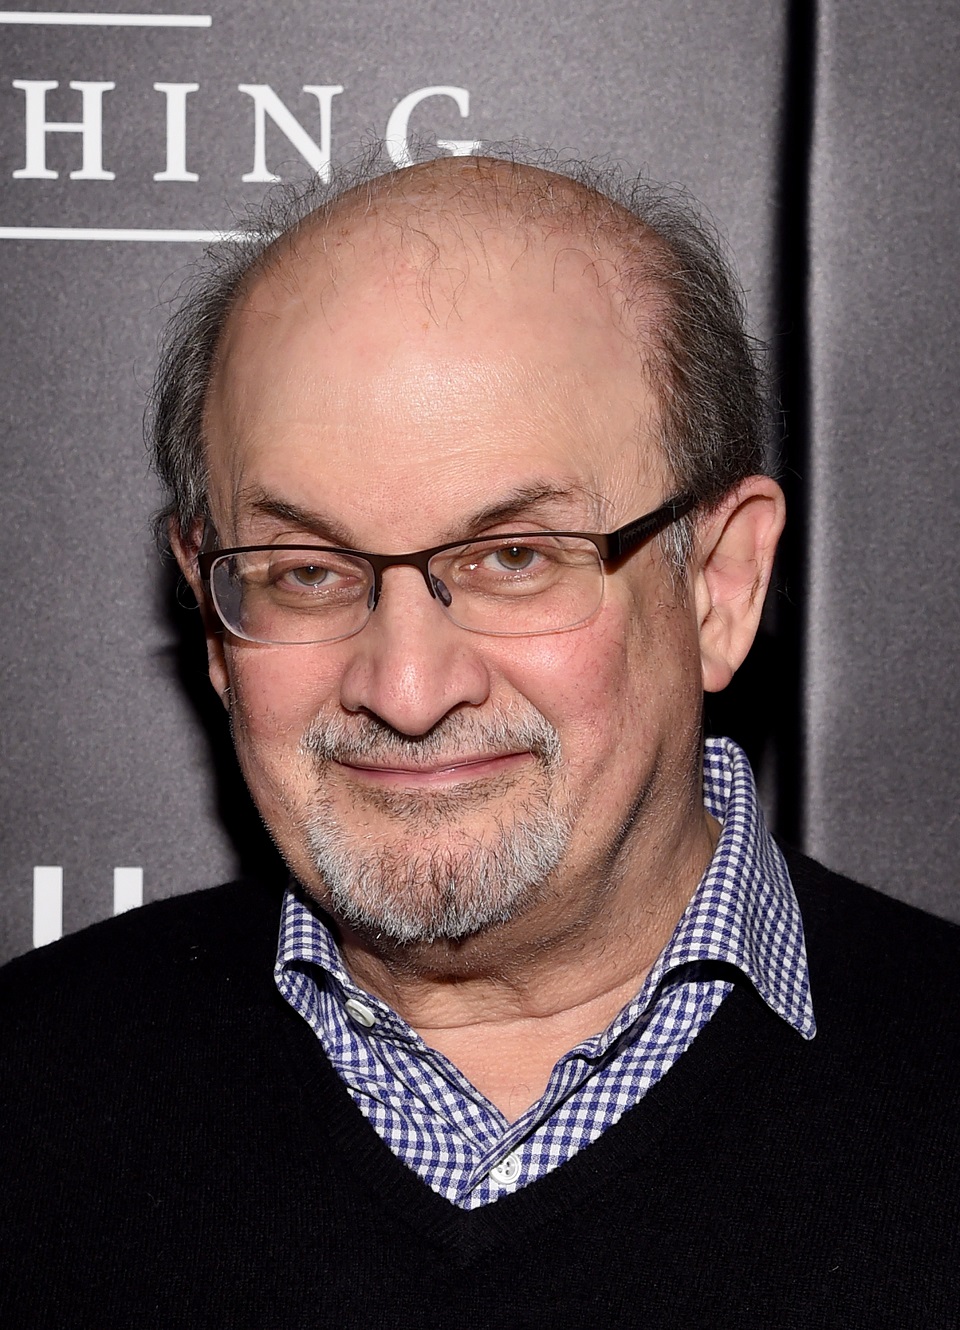 Penulis Salman Rushdie diserang di atas panggung di negara bagian New York GMA News Online